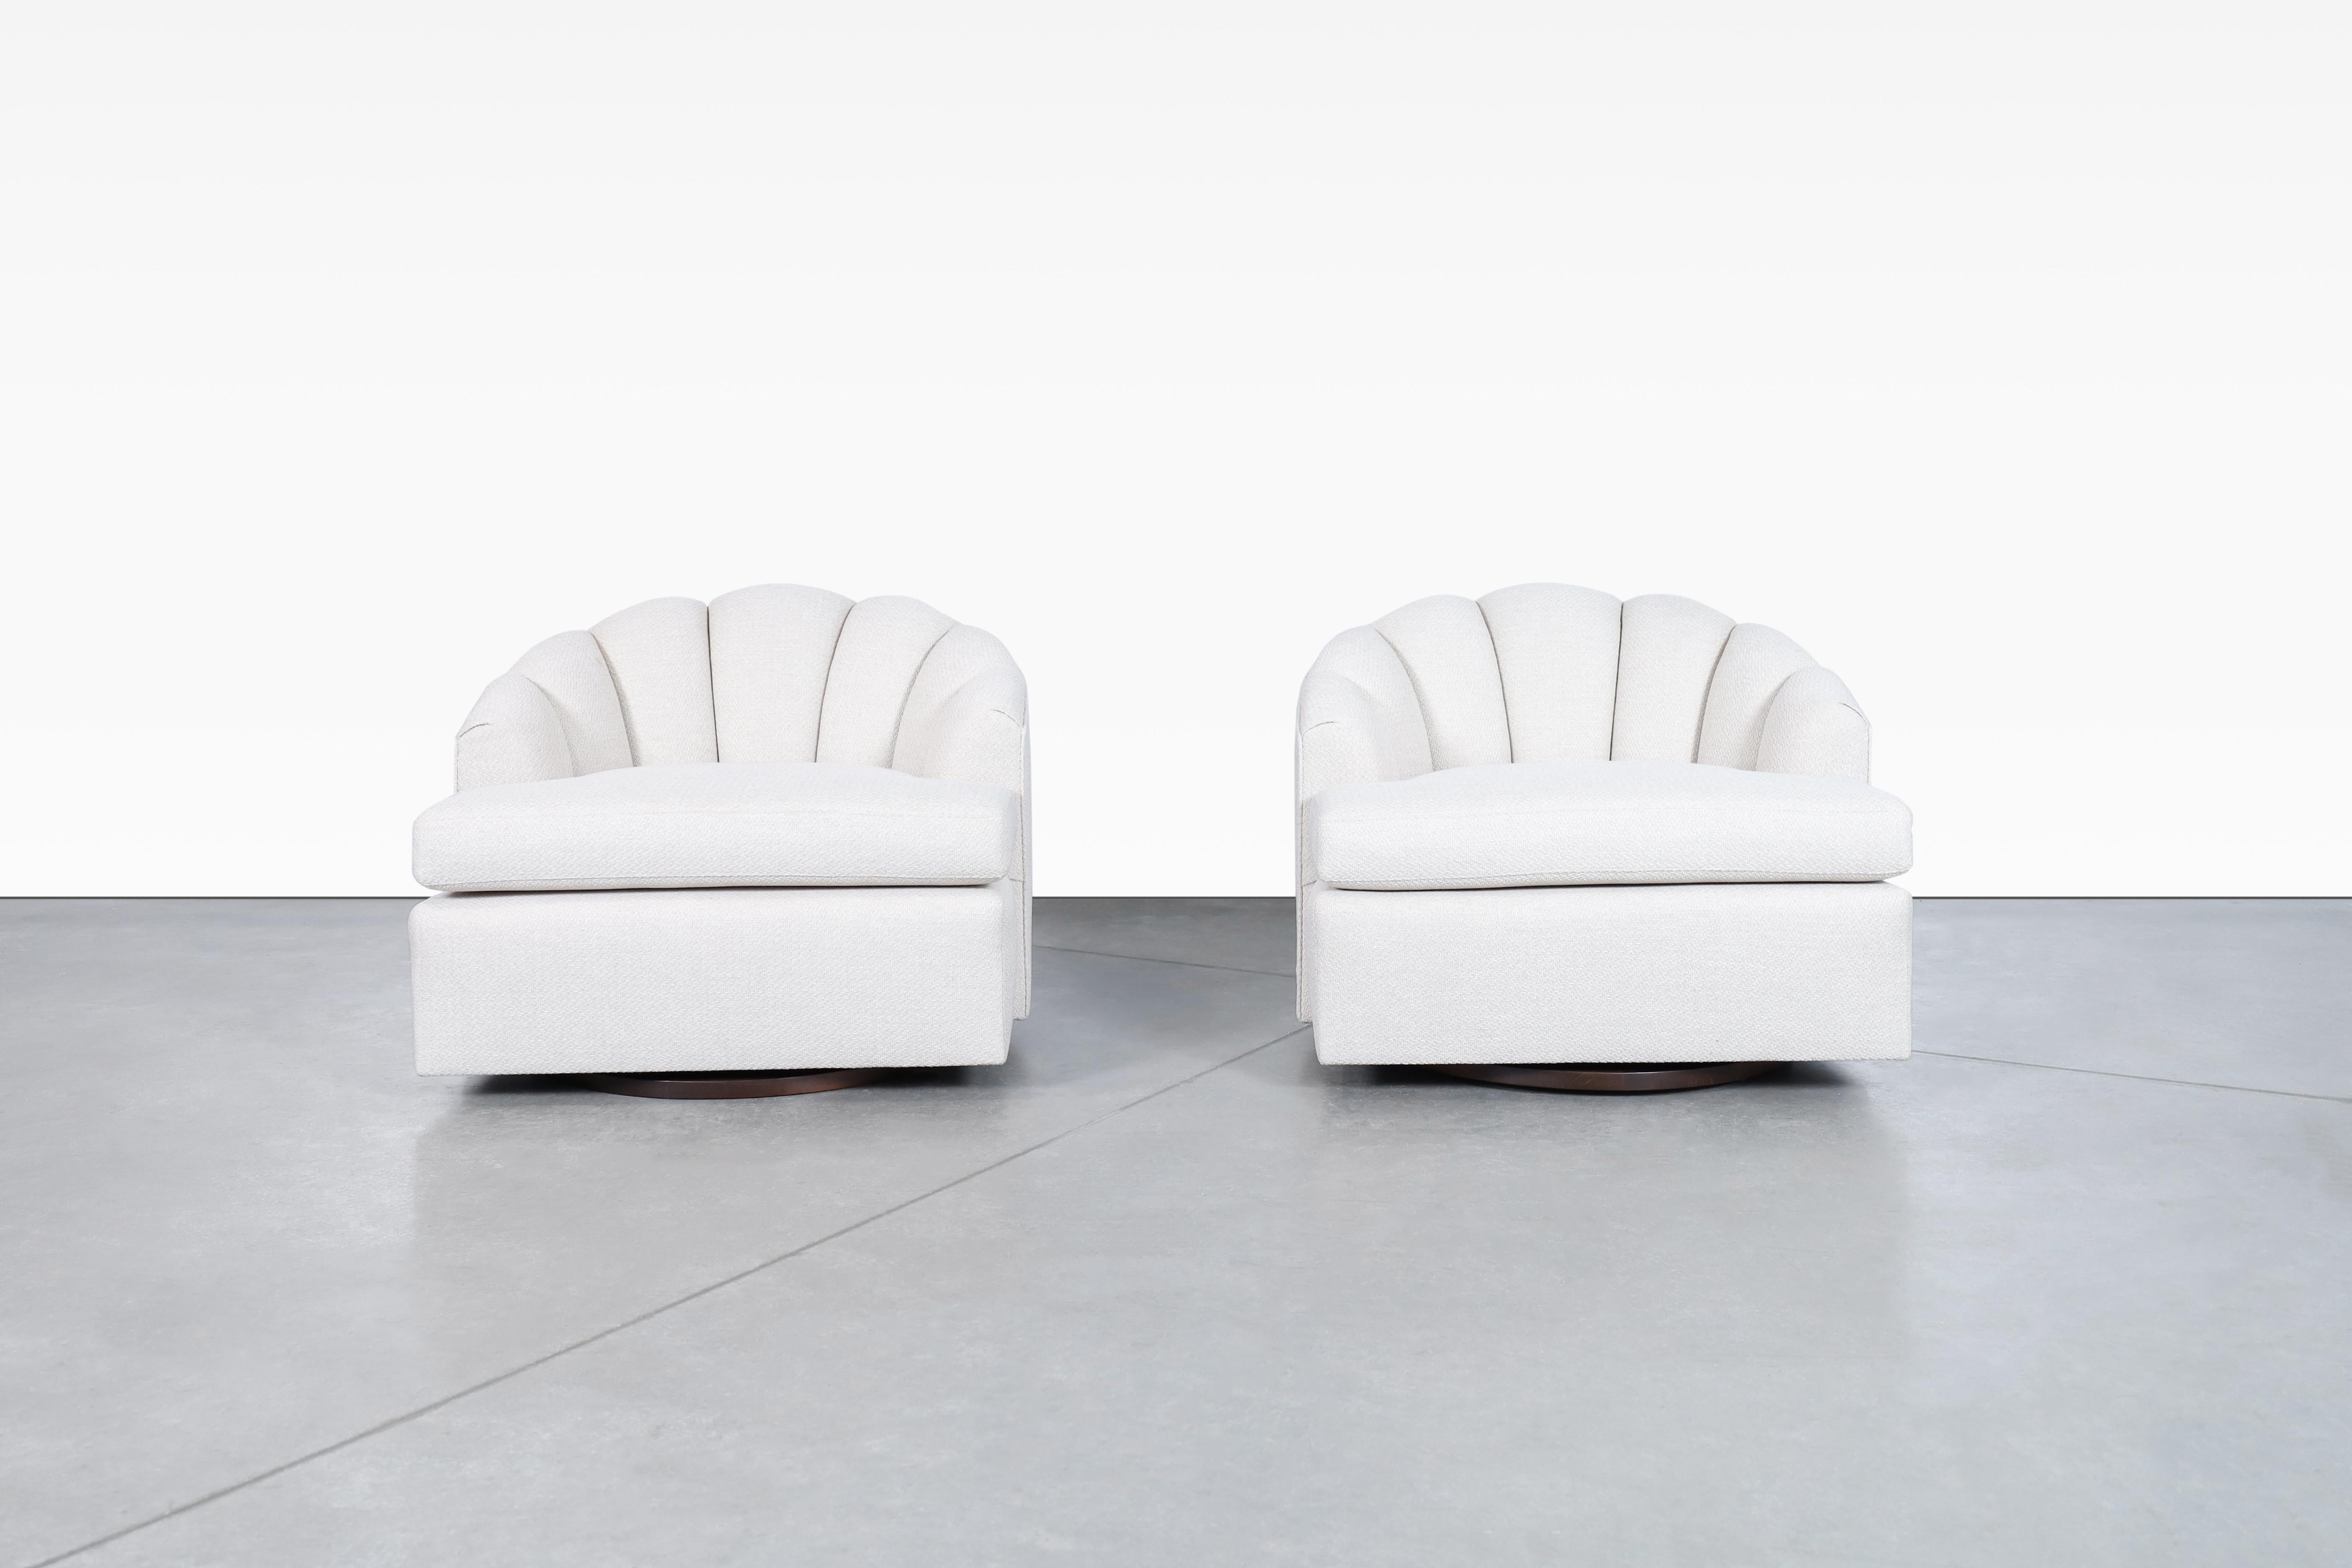 Merveilleuses chaises longues pivotantes vintage à dossier CIRCA, conçues et fabriquées aux États-Unis, vers les années 1970. Ces chaises représentent la combinaison parfaite du design, du confort et de l'élégance, des aspects rarement vus qui